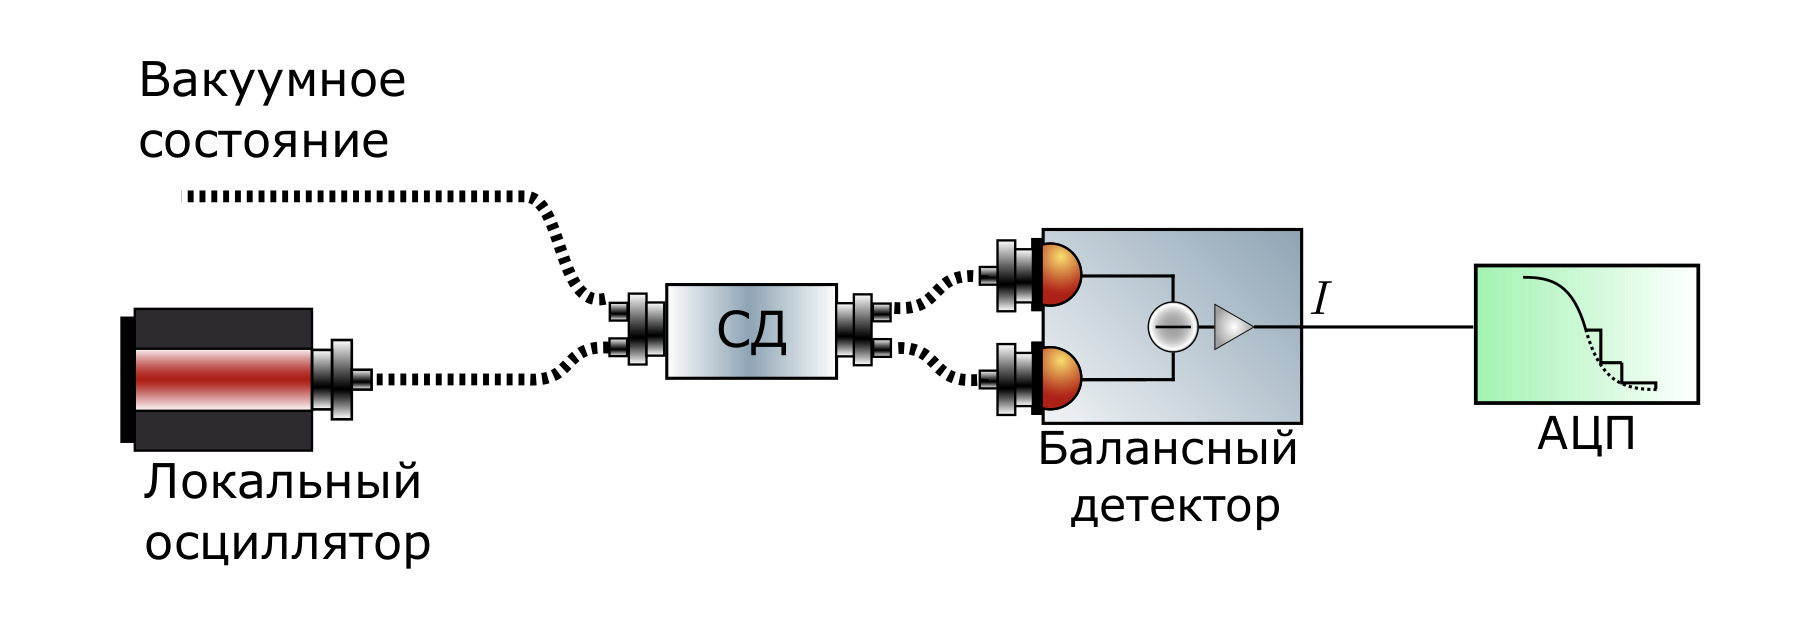 Рисунок 3 — Схема КГСЧ, основанного на флуктуациях вакуума.